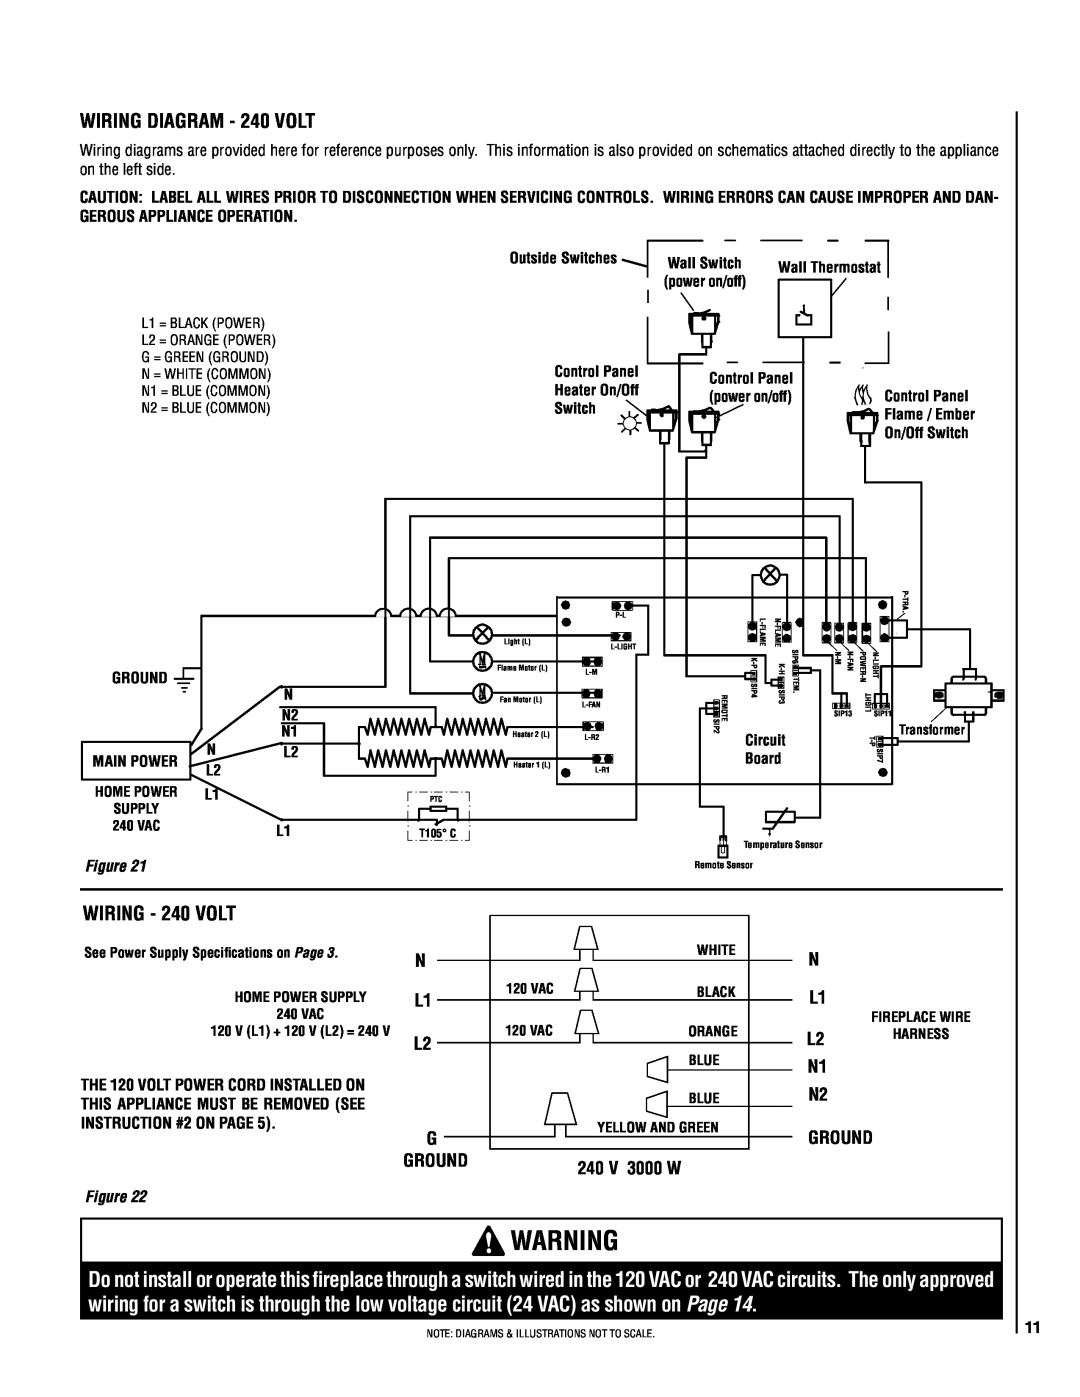 Lucent Technologies MPE-33R warranty WIRING - 240 volt, ground, 240 v 3000 w 